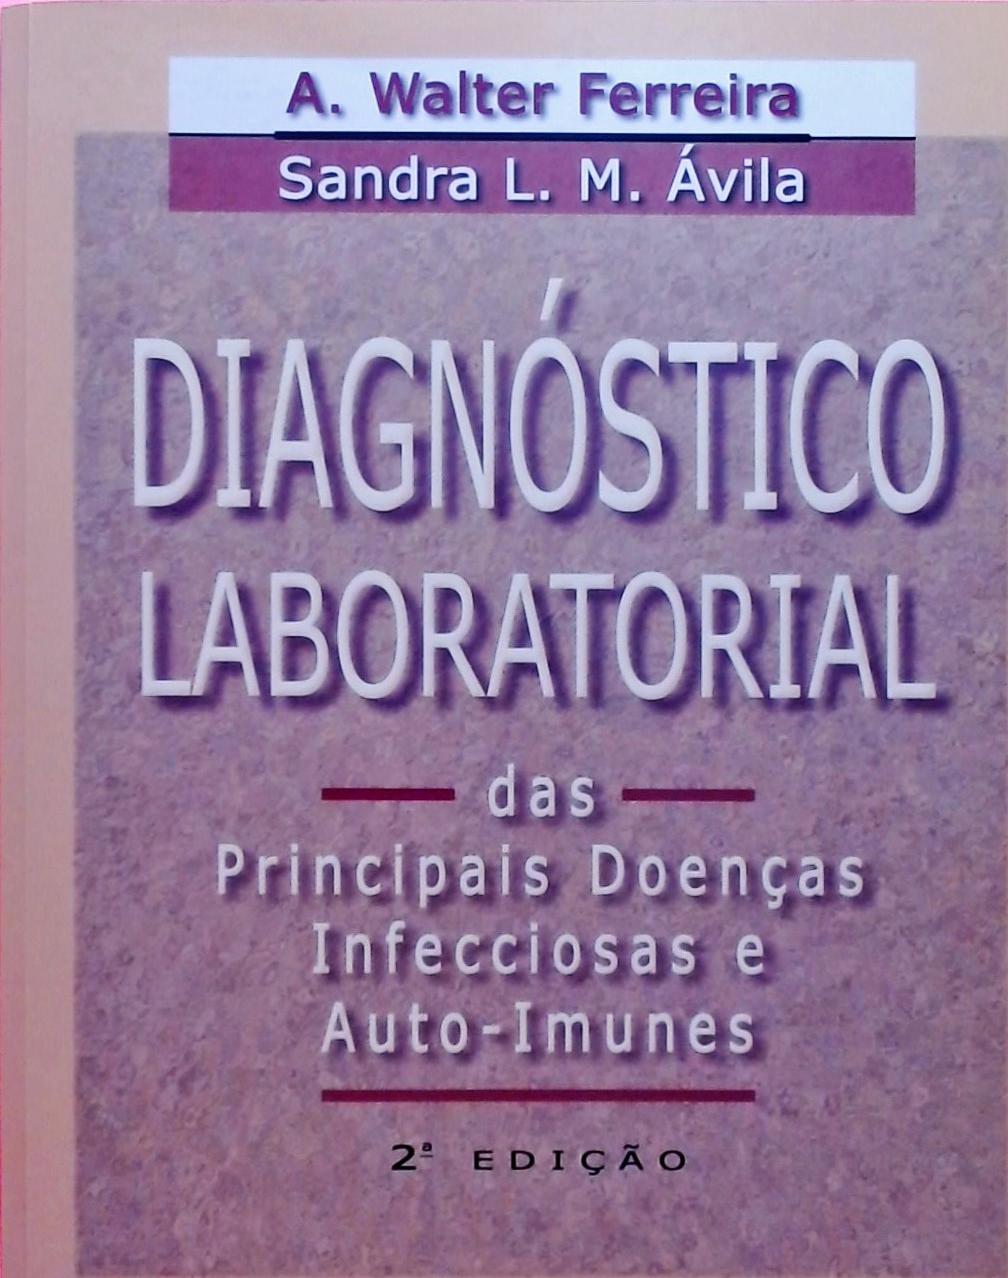 Diagnóstico Laboratorial das Principais Doenças Infecciosas e Auto-Imunes